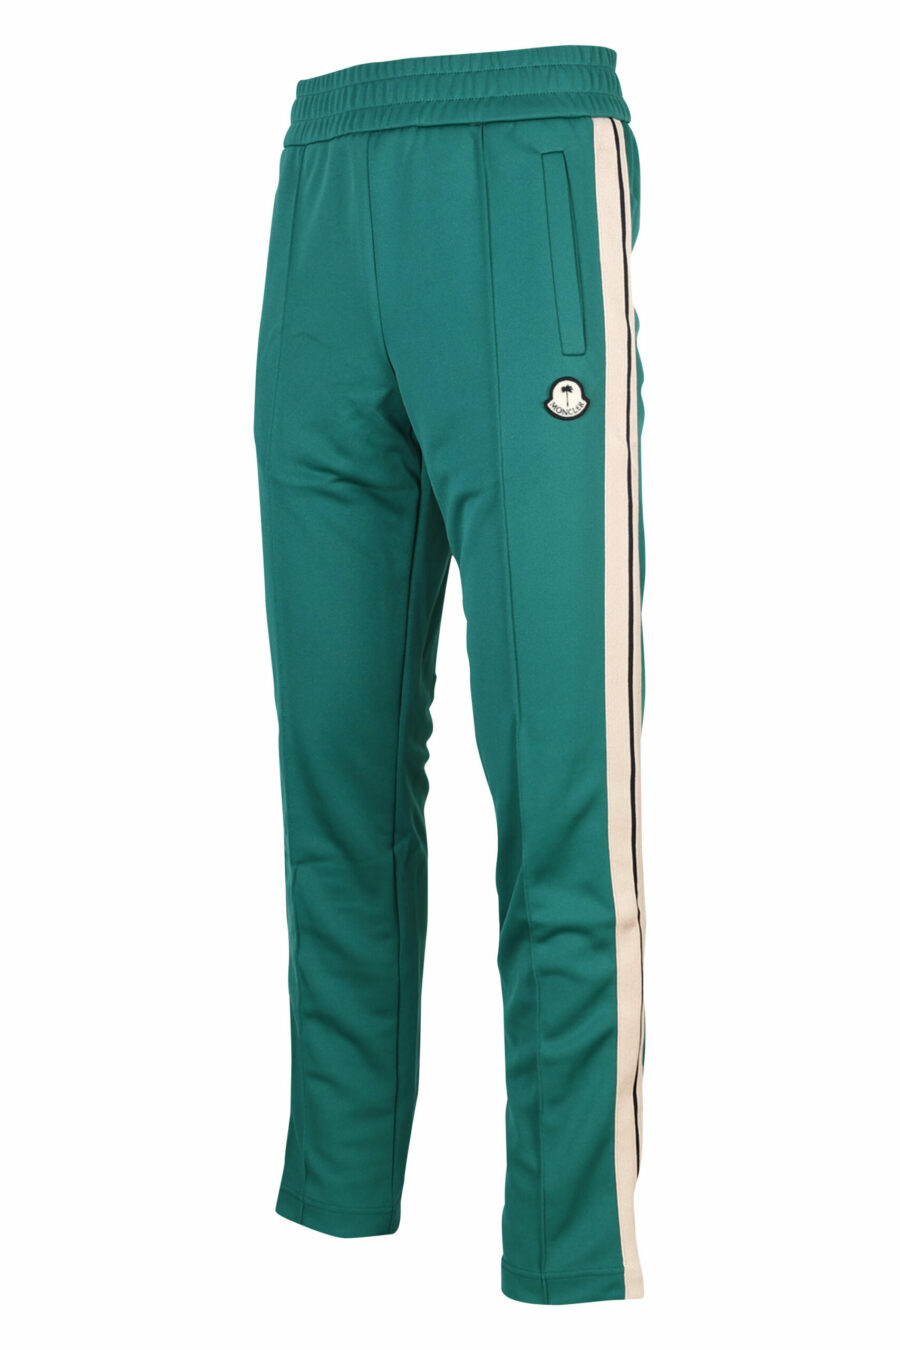 Pantalón de chándal verde con franjas blancas laterales - 8057151109306 1 scaled